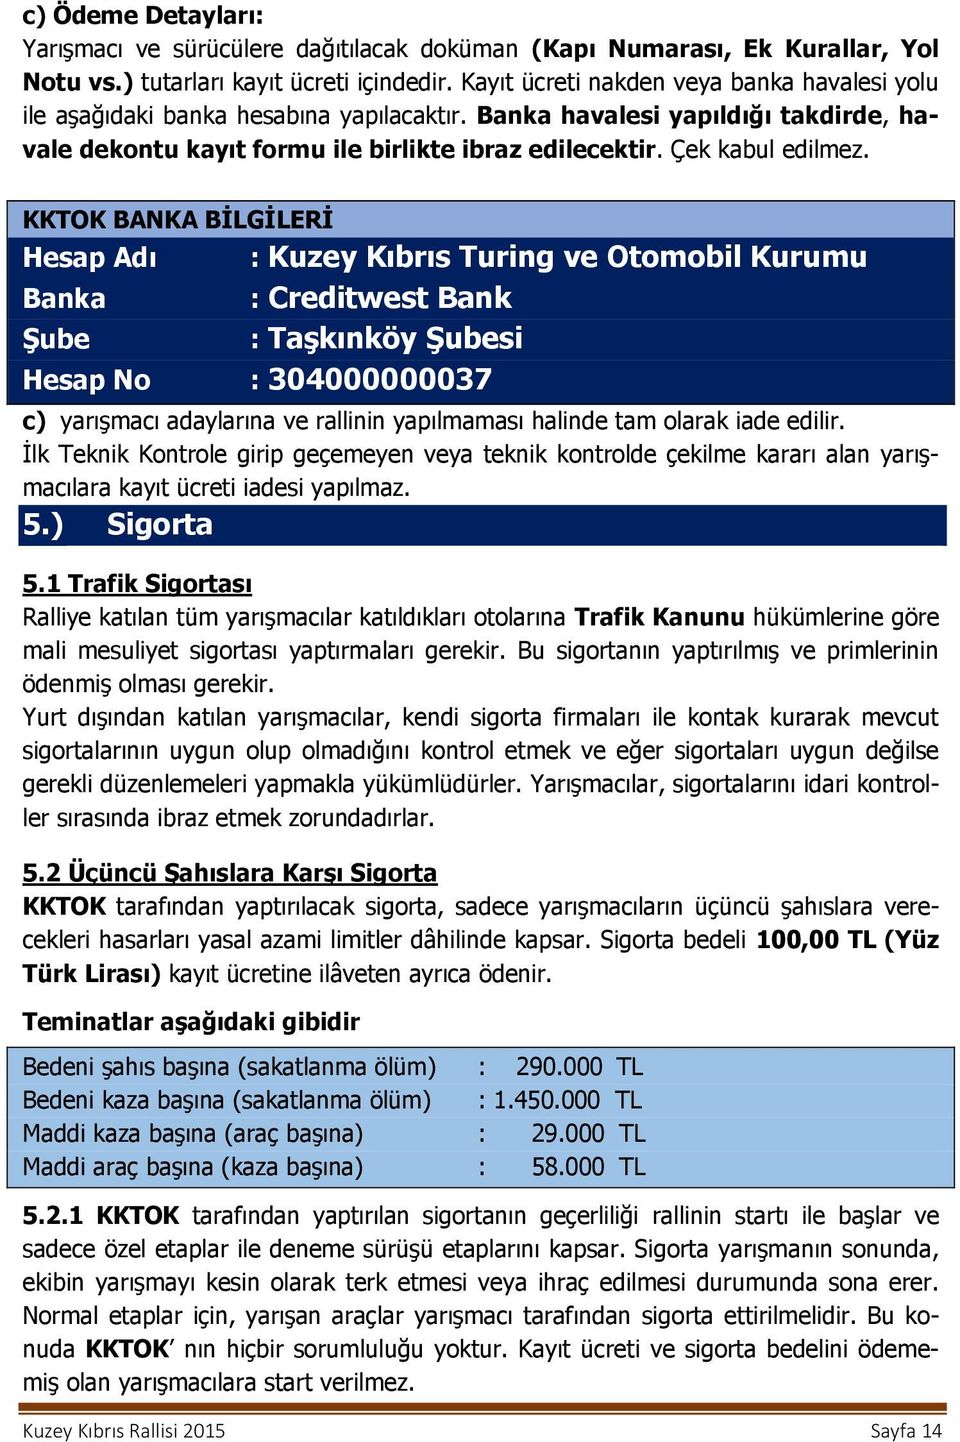 KKTOK BANKA BİLGİLERİ Hesap Adı : Kuzey Kıbrıs Turing ve Otomobil Kurumu Banka : Creditwest Bank Şube : Taşkınköy Şubesi Hesap No : 304000000037 c) yarışmacı adaylarına ve rallinin yapılmaması